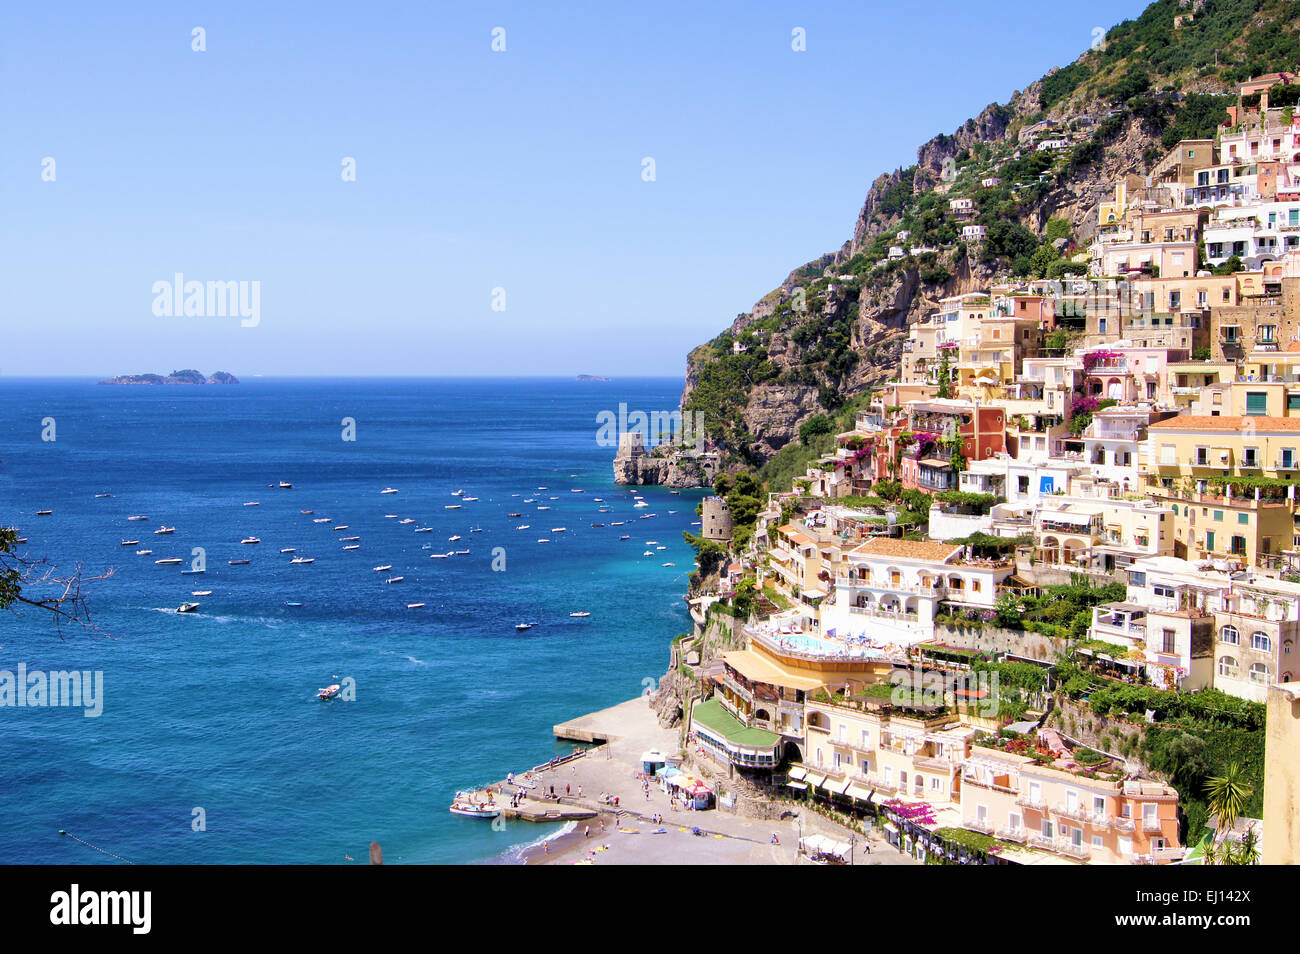 Vue vers la ville côtière de Positano sur la côte amalfitaine d'Italie Banque D'Images